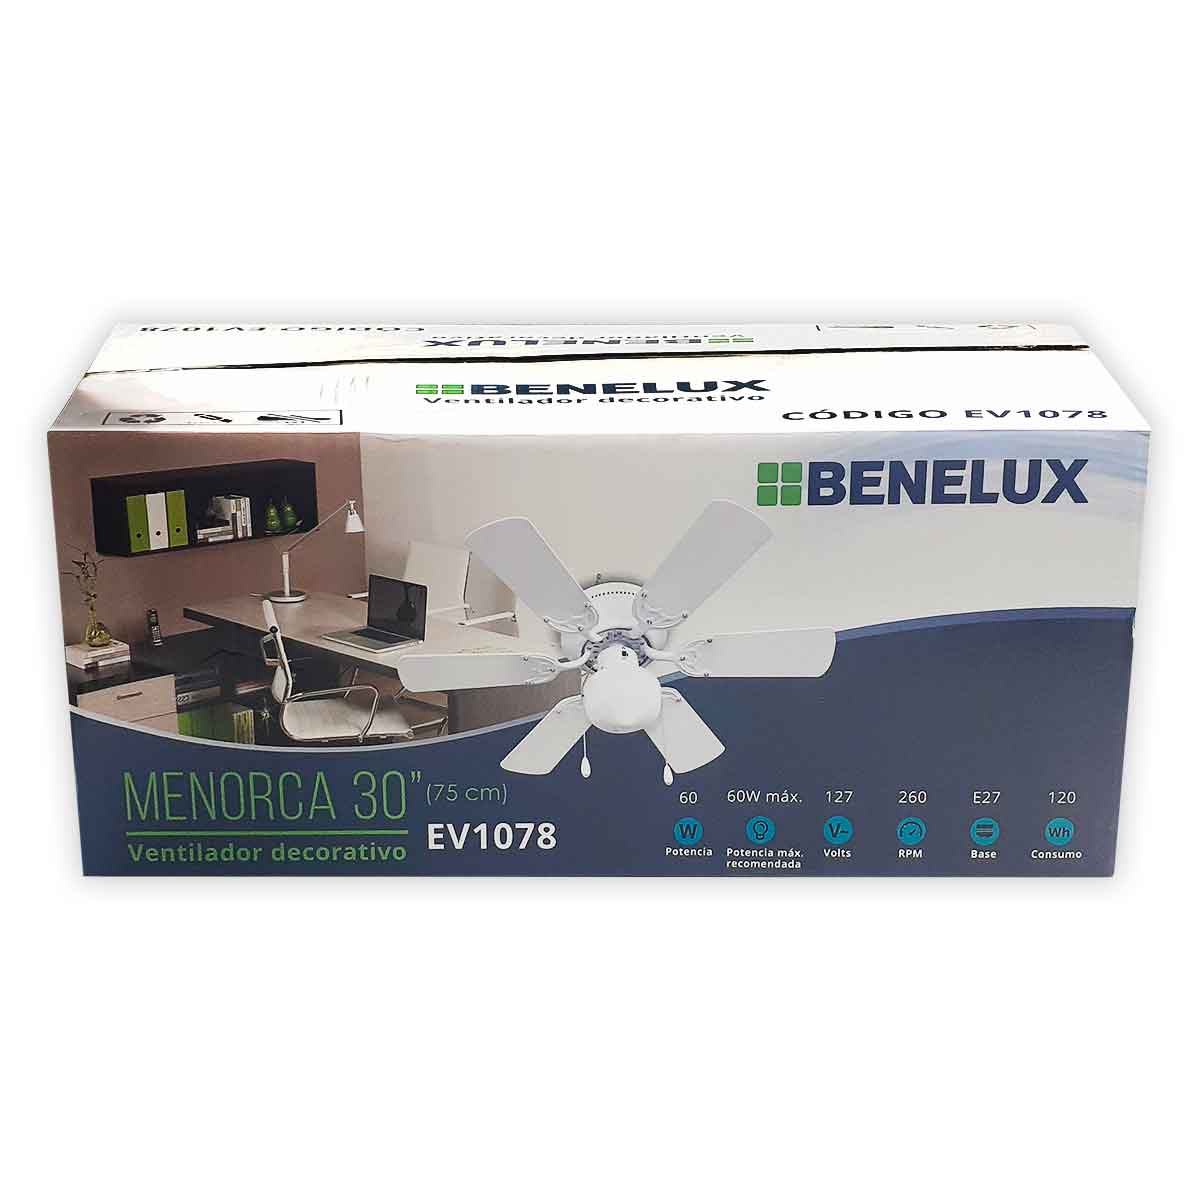 caja ventilador decorativo blanco benelux ev1078